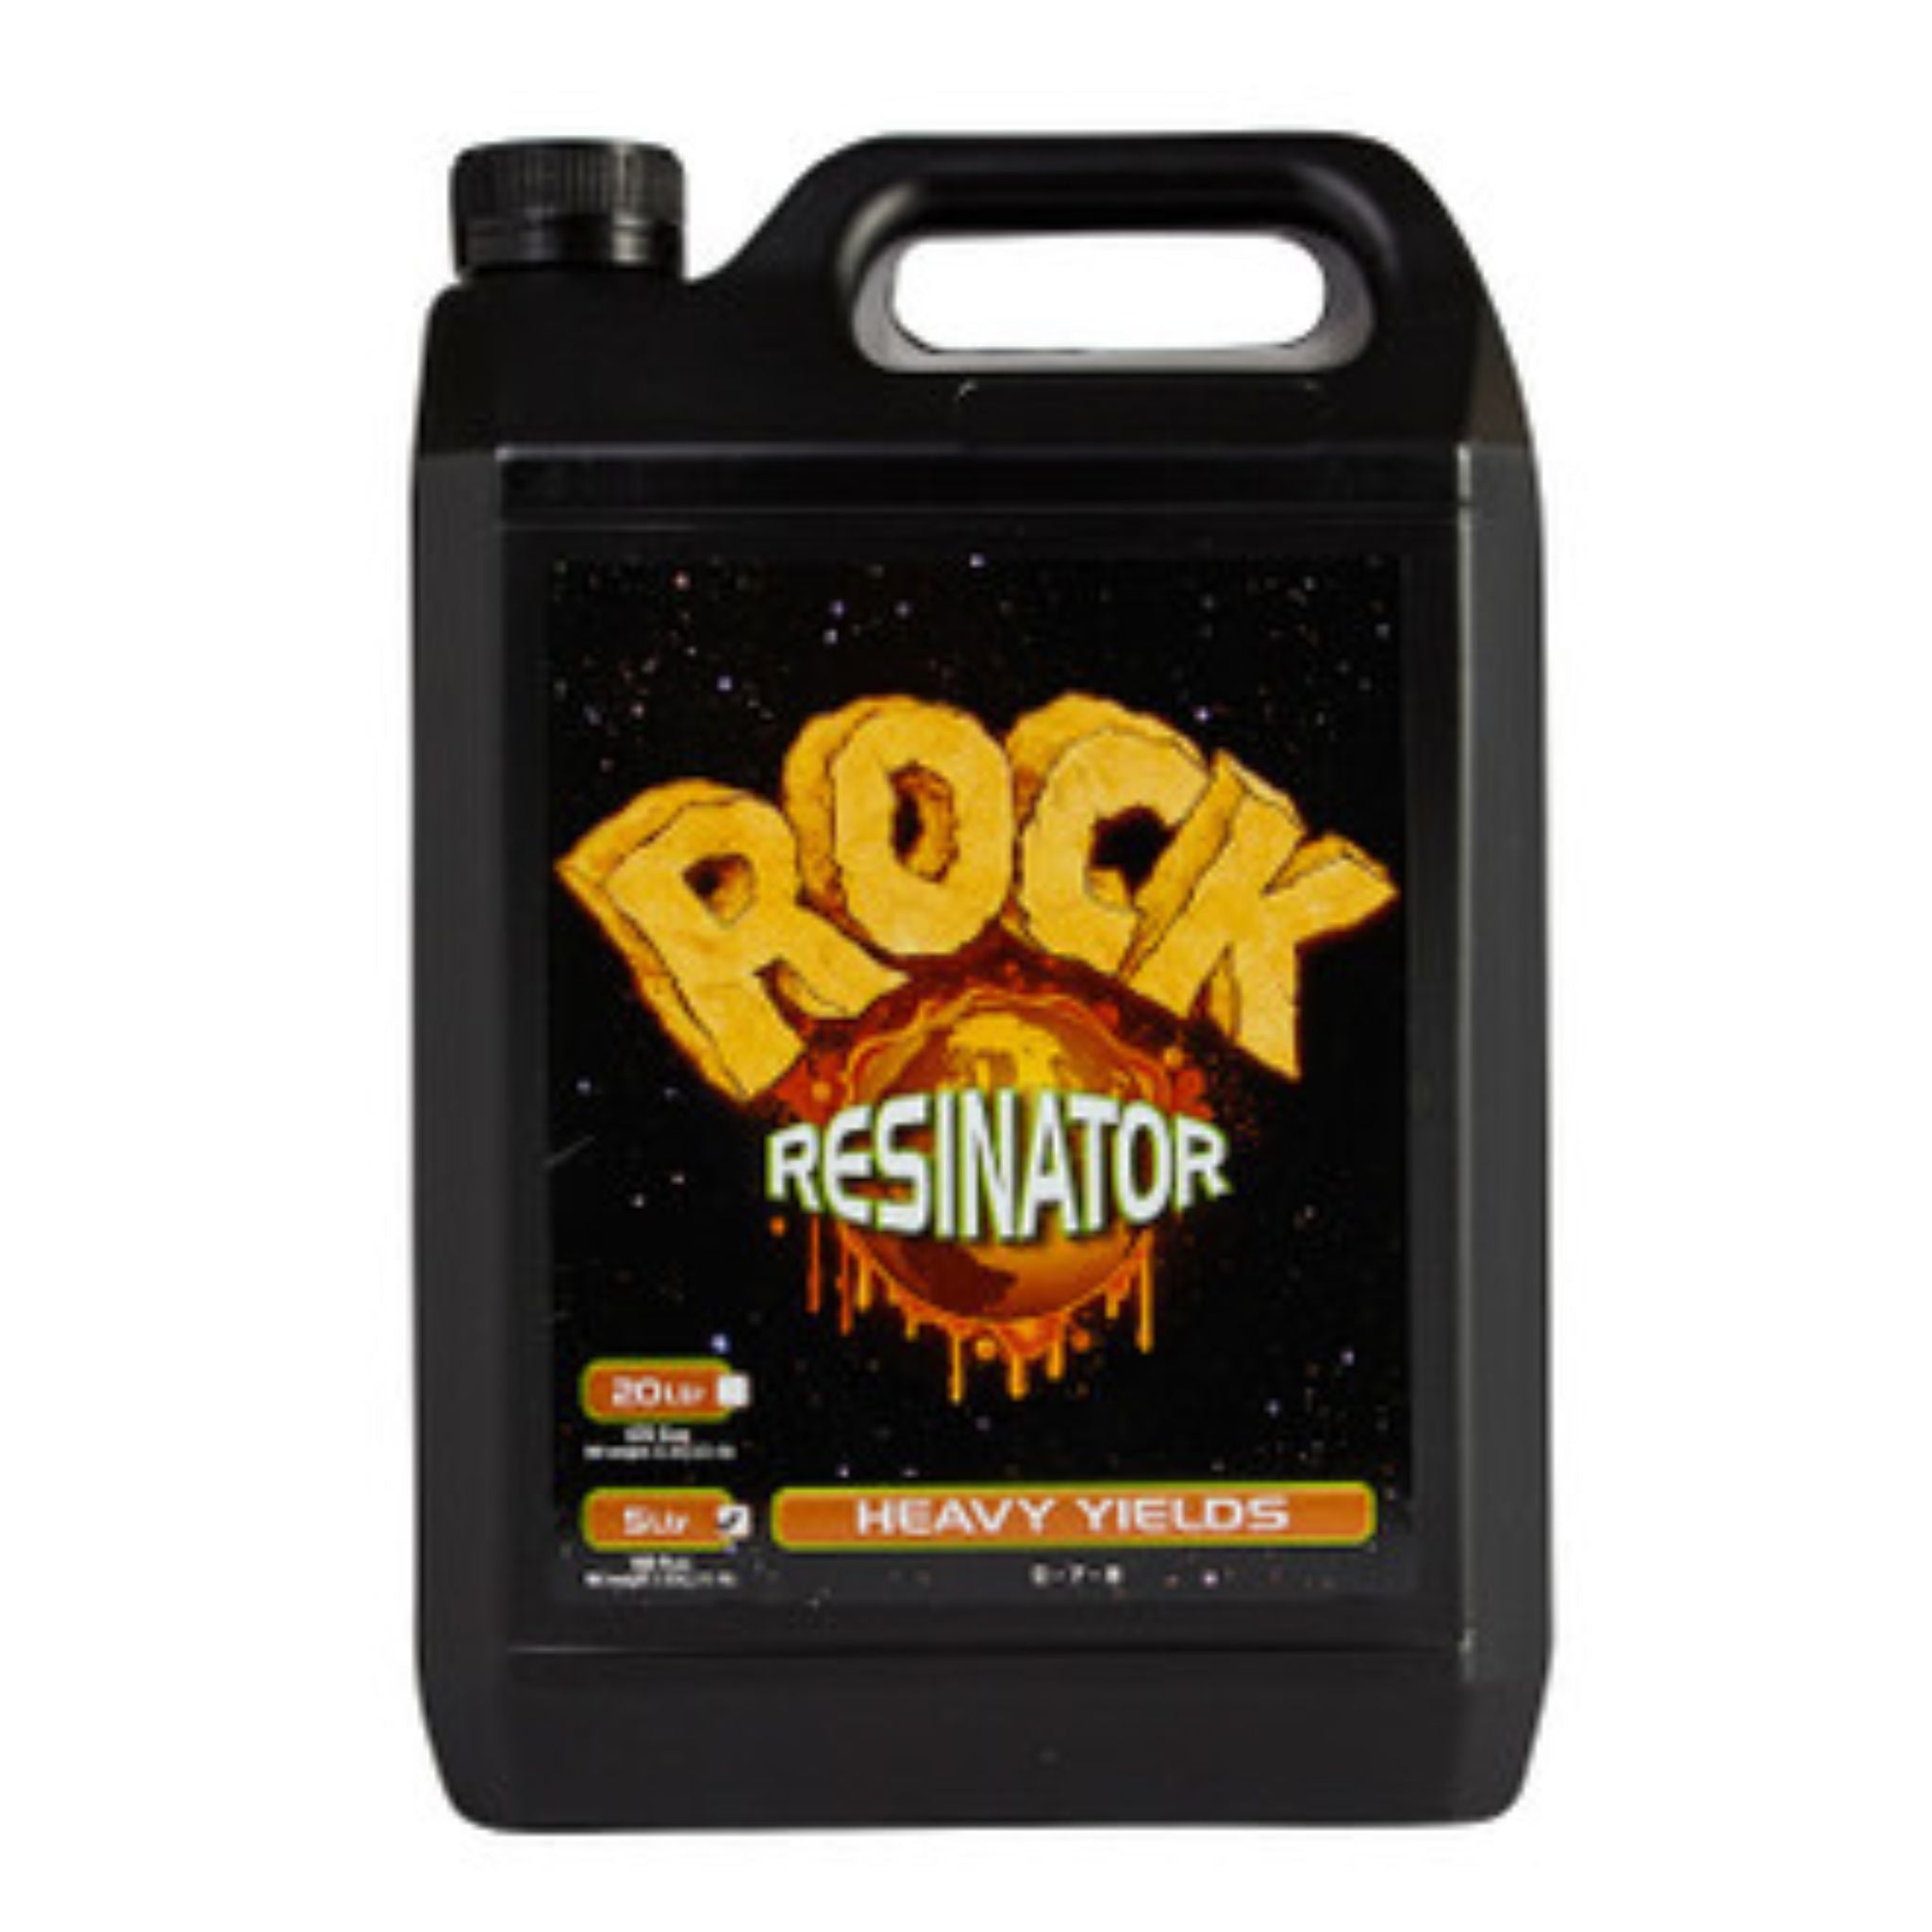 Rock Resinator - Heavy yields